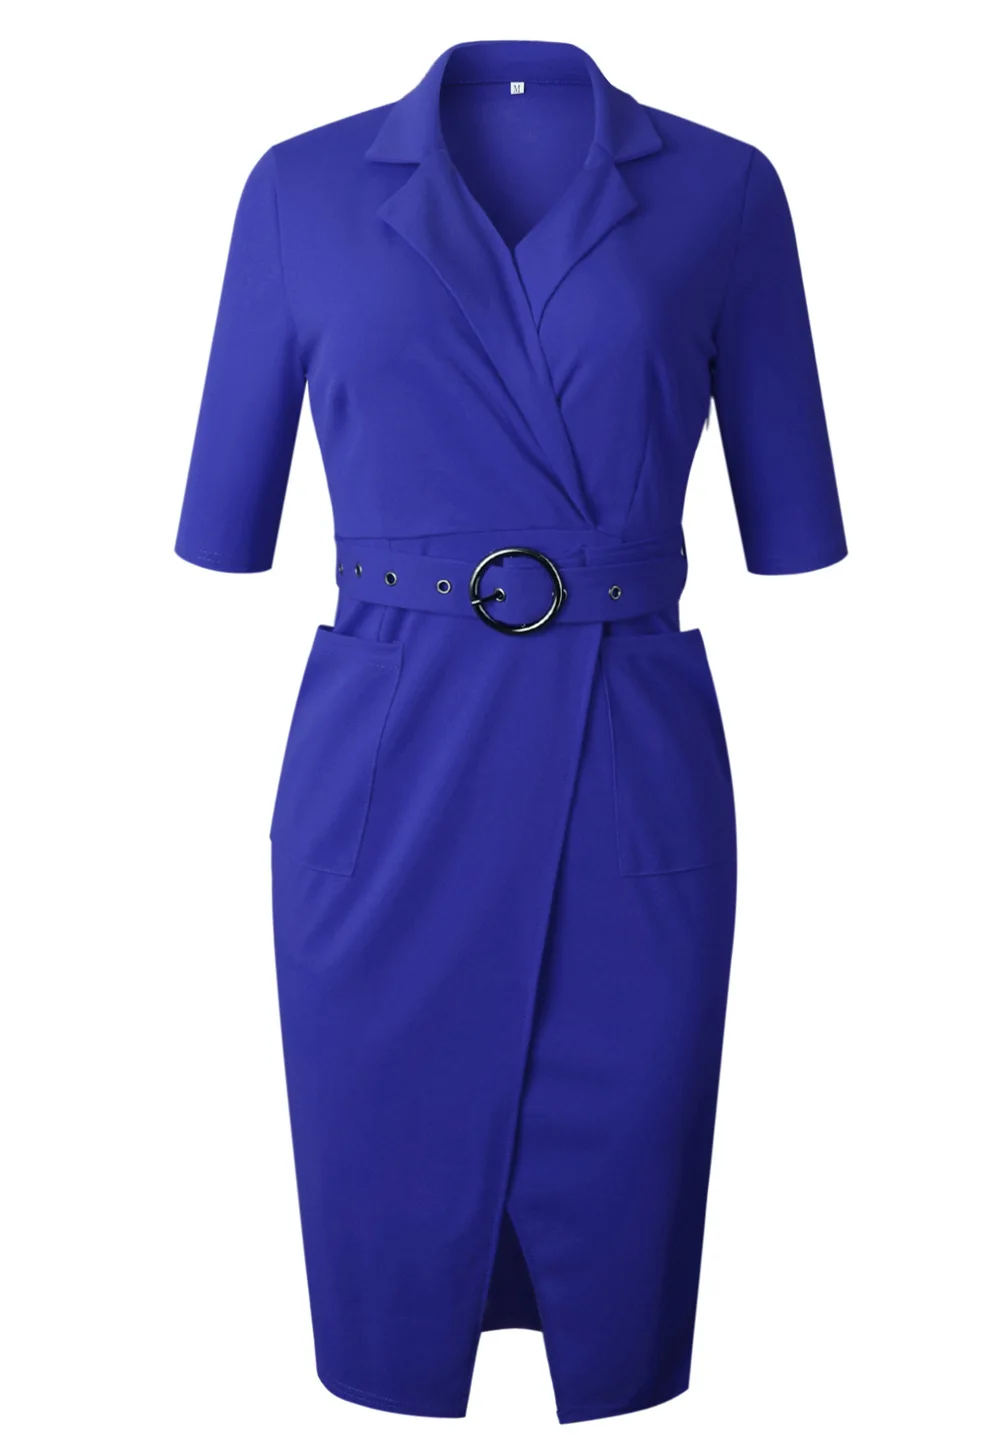 HGTE весенний элегантный синий черный костюм женское офисное платье большого размера костюм воротник бизнес вечерние нестандартные женские платья свободный пояс